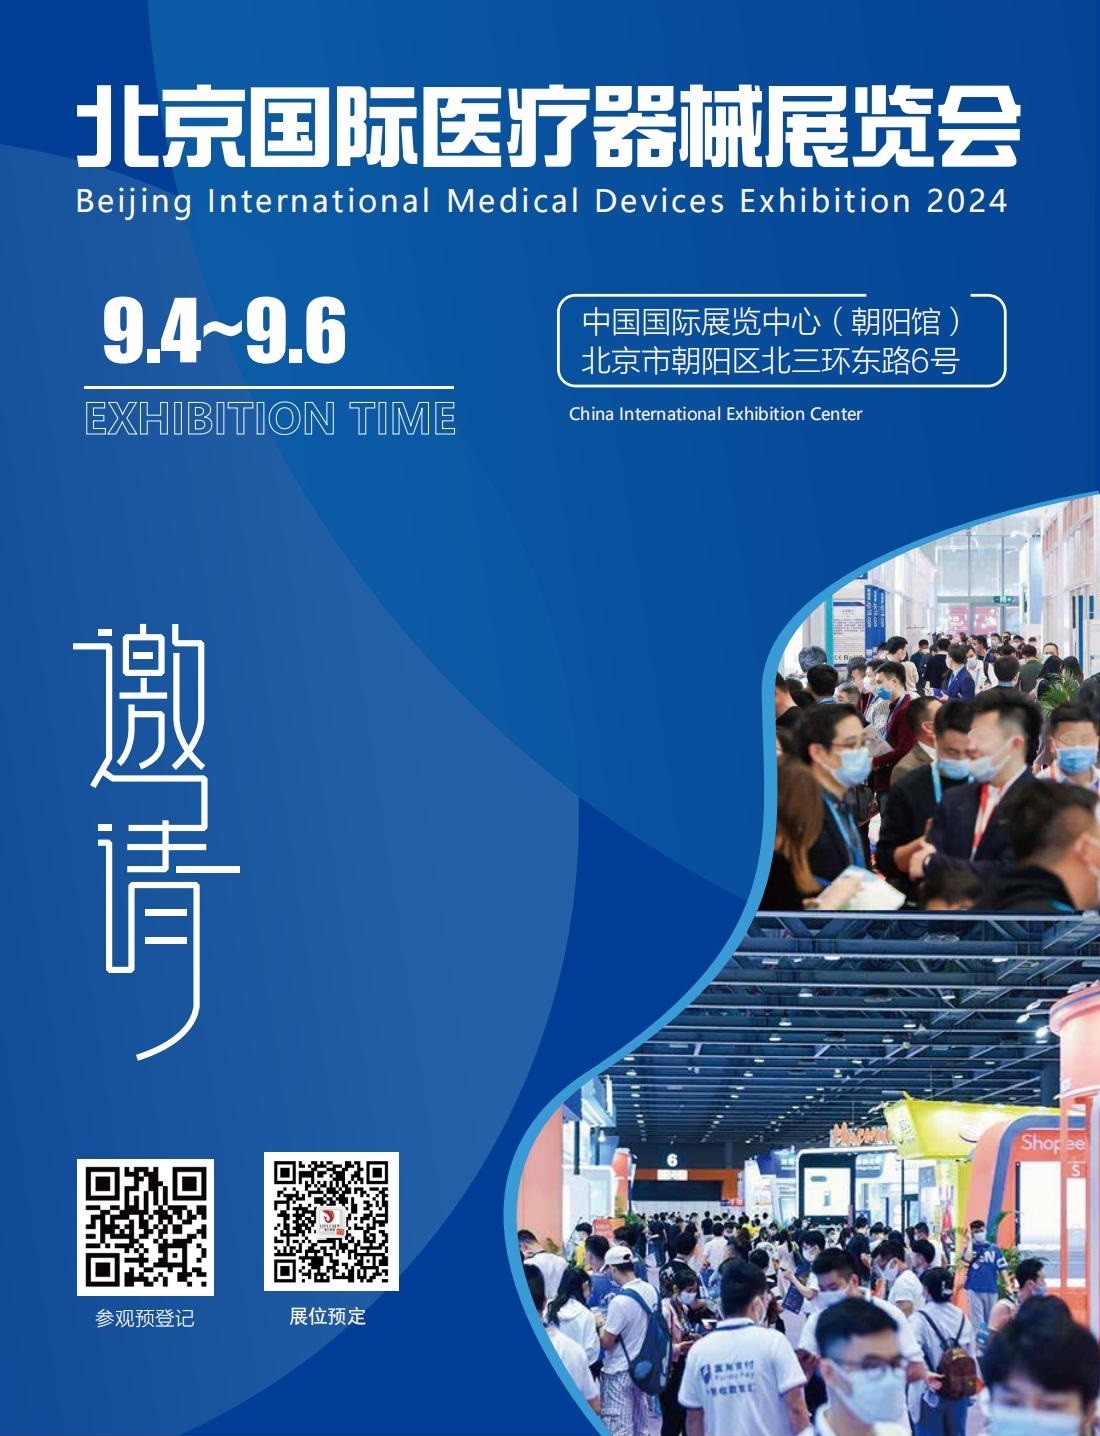 北京国际医疗器械展览会将于2024年9月4日-6日举办